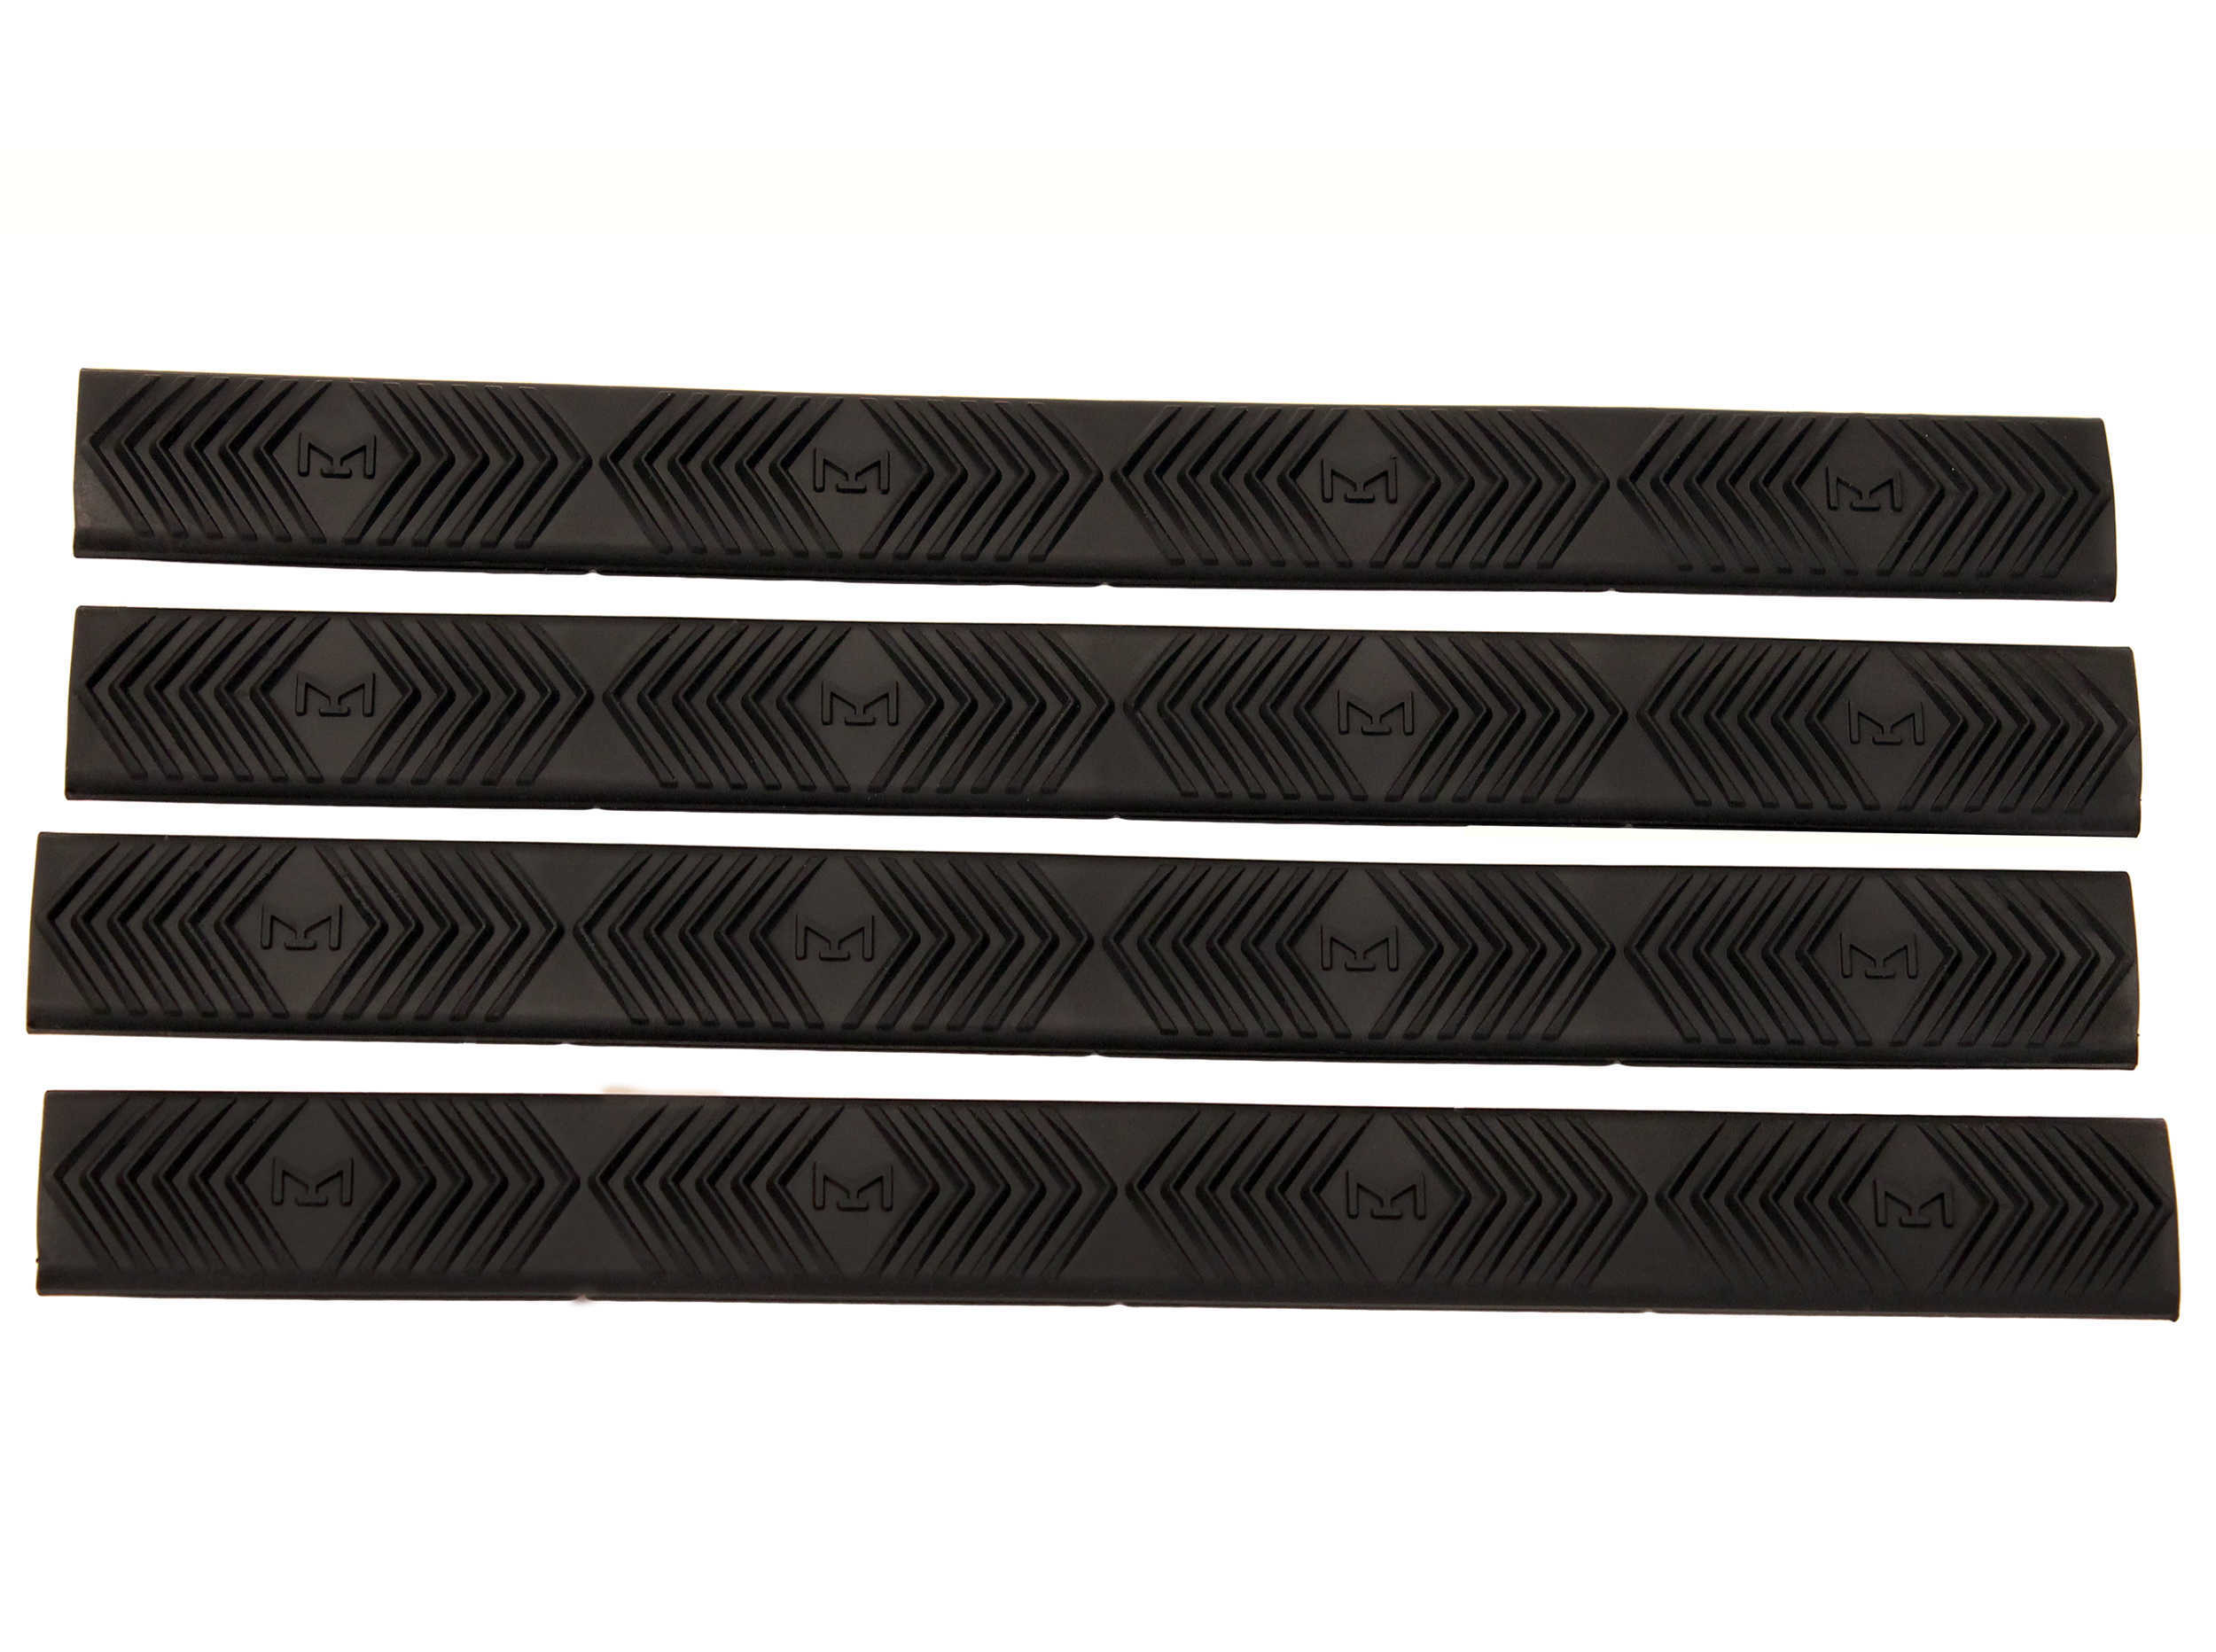 Ergo M-LOK WedgeLoK Slot Cover Grip, Black, Pack Of 4 Md: 4332-4PK-BK